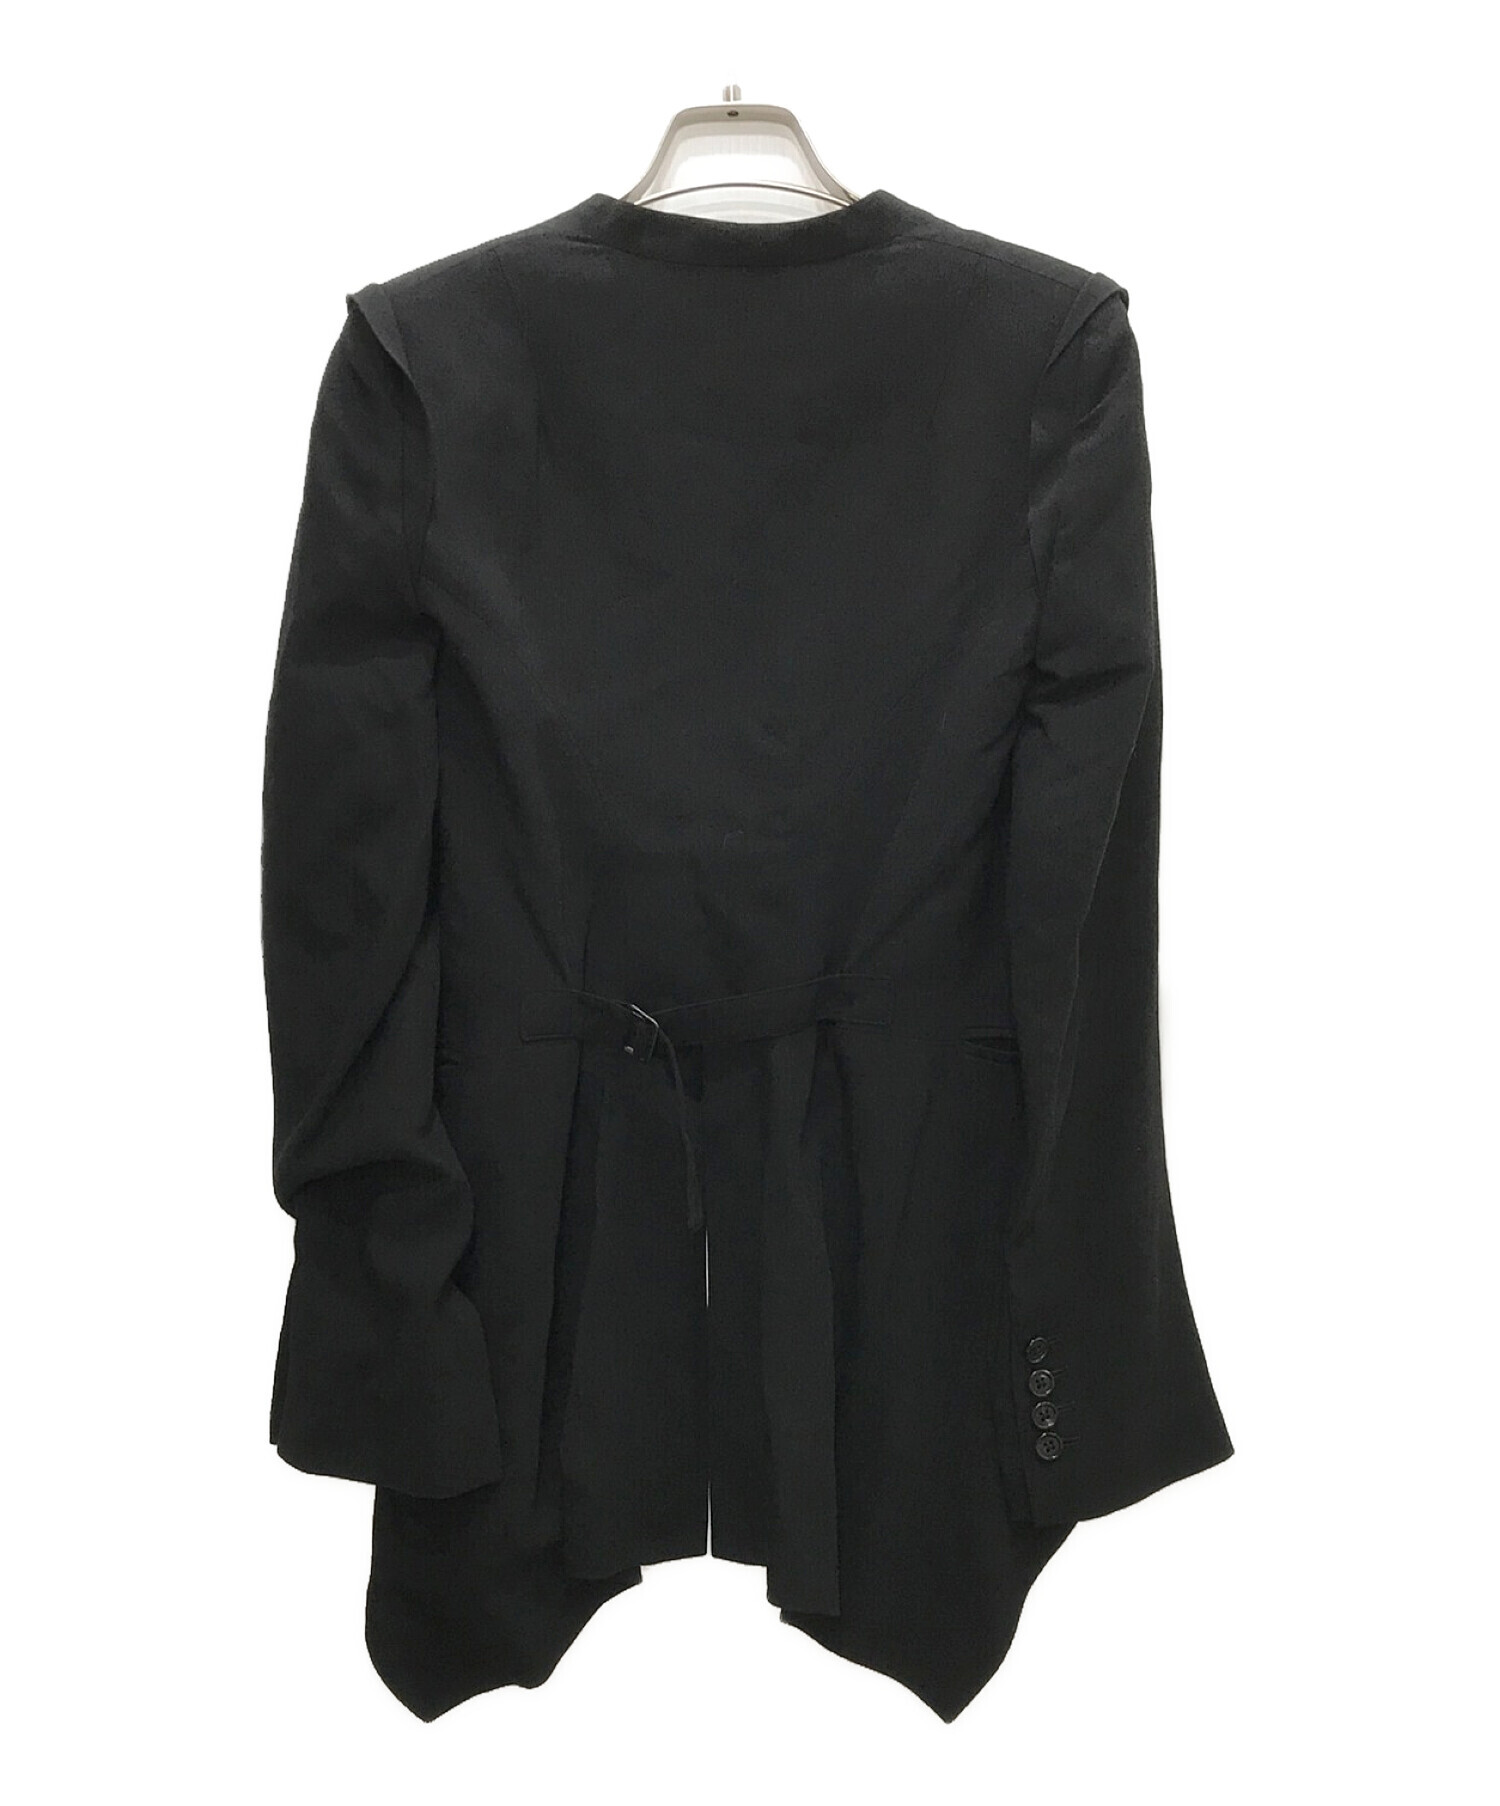 ANN DEMEULEMEESTER (アンドゥムルメステール) ロングデザインジャケット ブラック サイズ:34